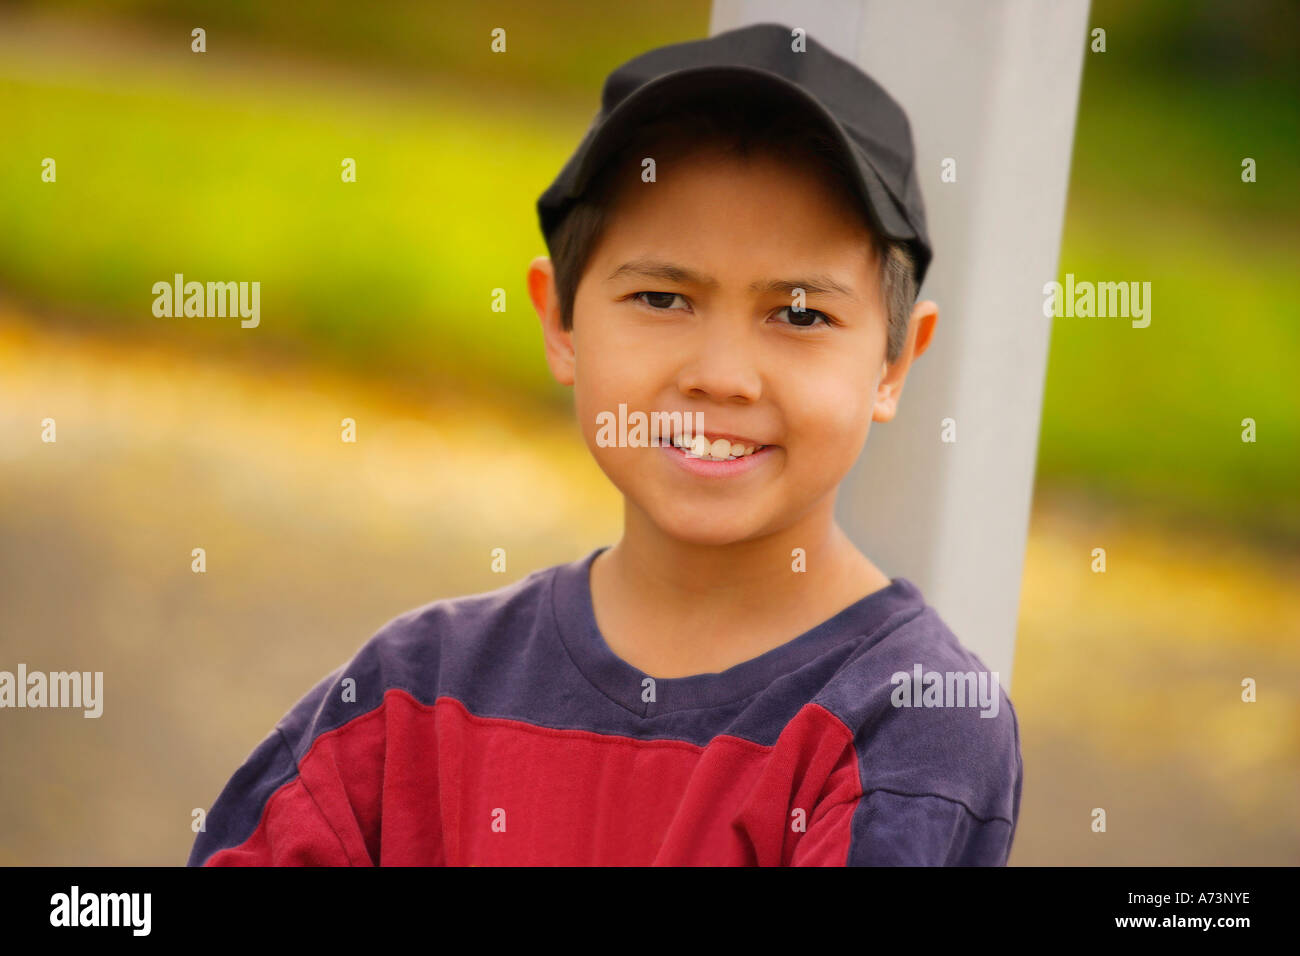 Portrait d'un garçon appuyé contre un poteau Banque D'Images